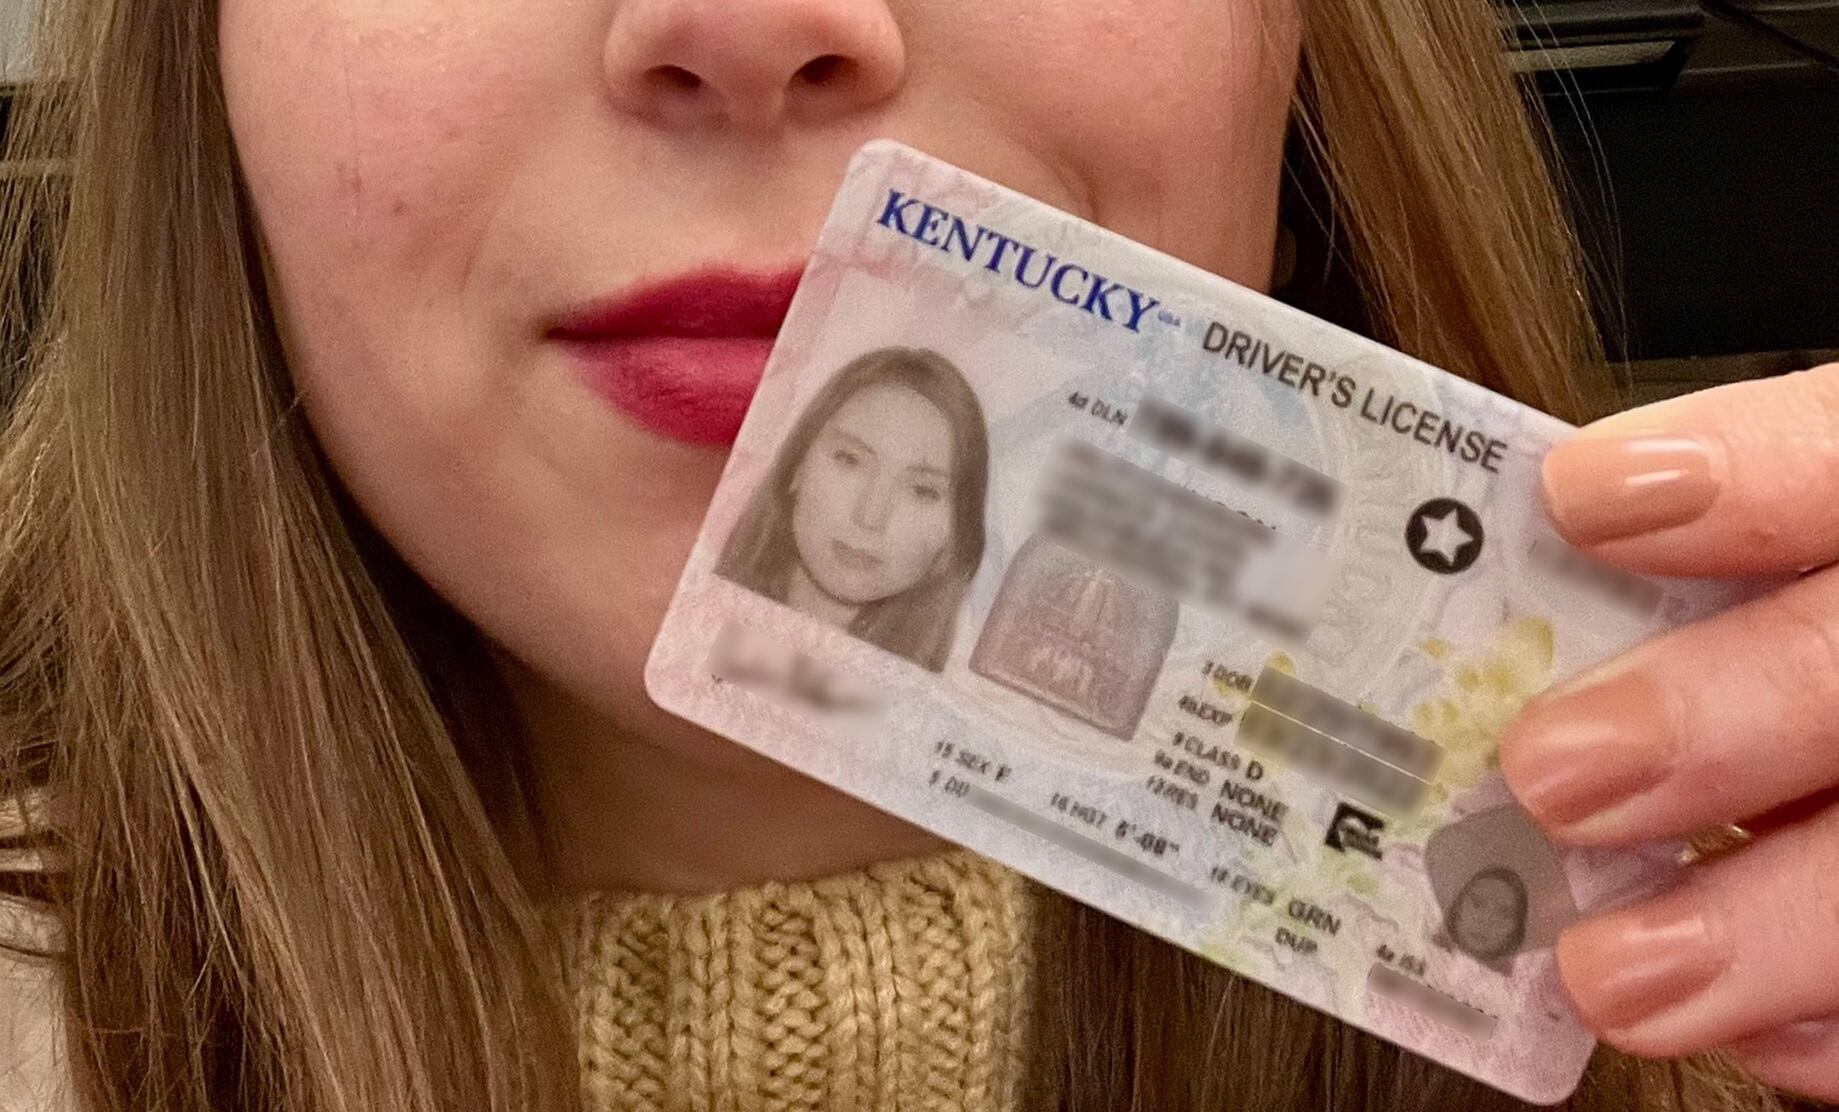 La Real ID en Kentucky se identifica por una estrella en la parte superior derecha